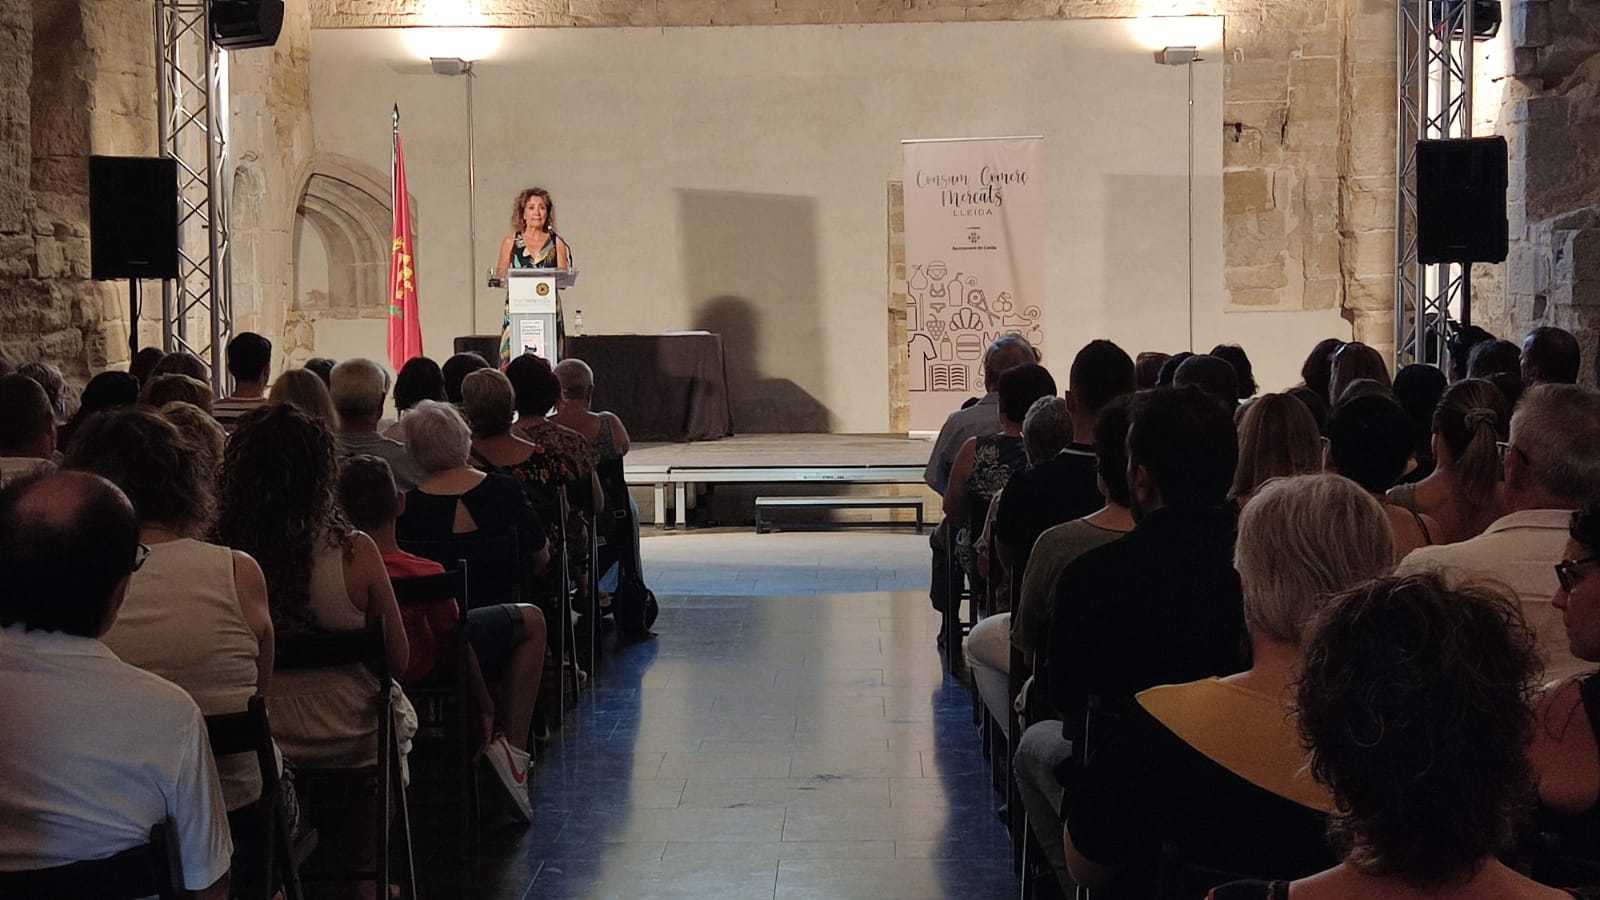 La regidora de Consum, Comerç, Mercats i Participació, Marta Gispert, ha presidit el lliurament dels premis de la dotzena edició de la campanya “Compra i Descobreix Catalunya” que organitza la Xarxa Barris Antics.